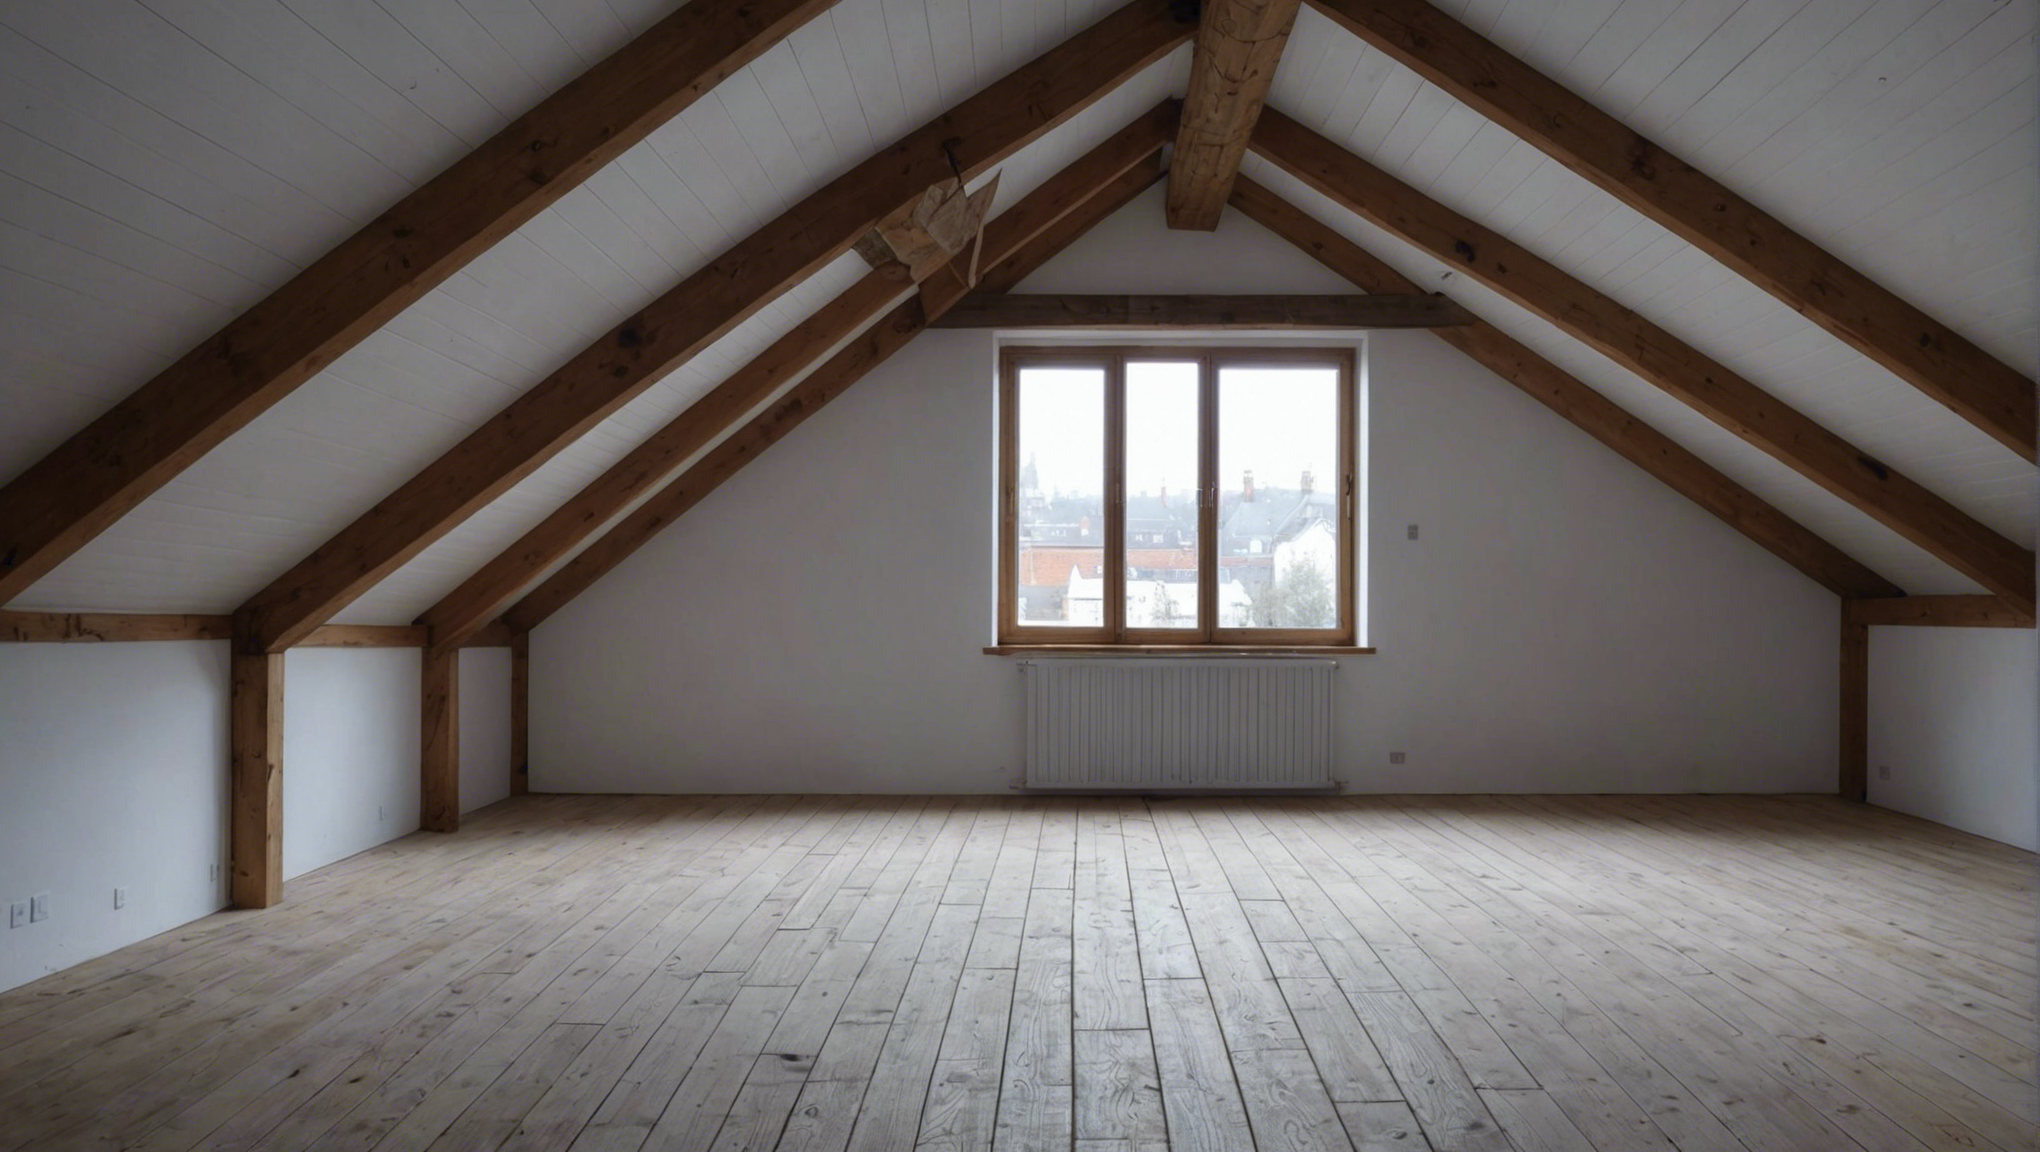 découvrez comment isoler votre toit de manière efficace par l'intérieur grâce à nos conseils d'experts. améliorez le confort thermique de votre maison avec nos solutions d'isolation pour toiture.